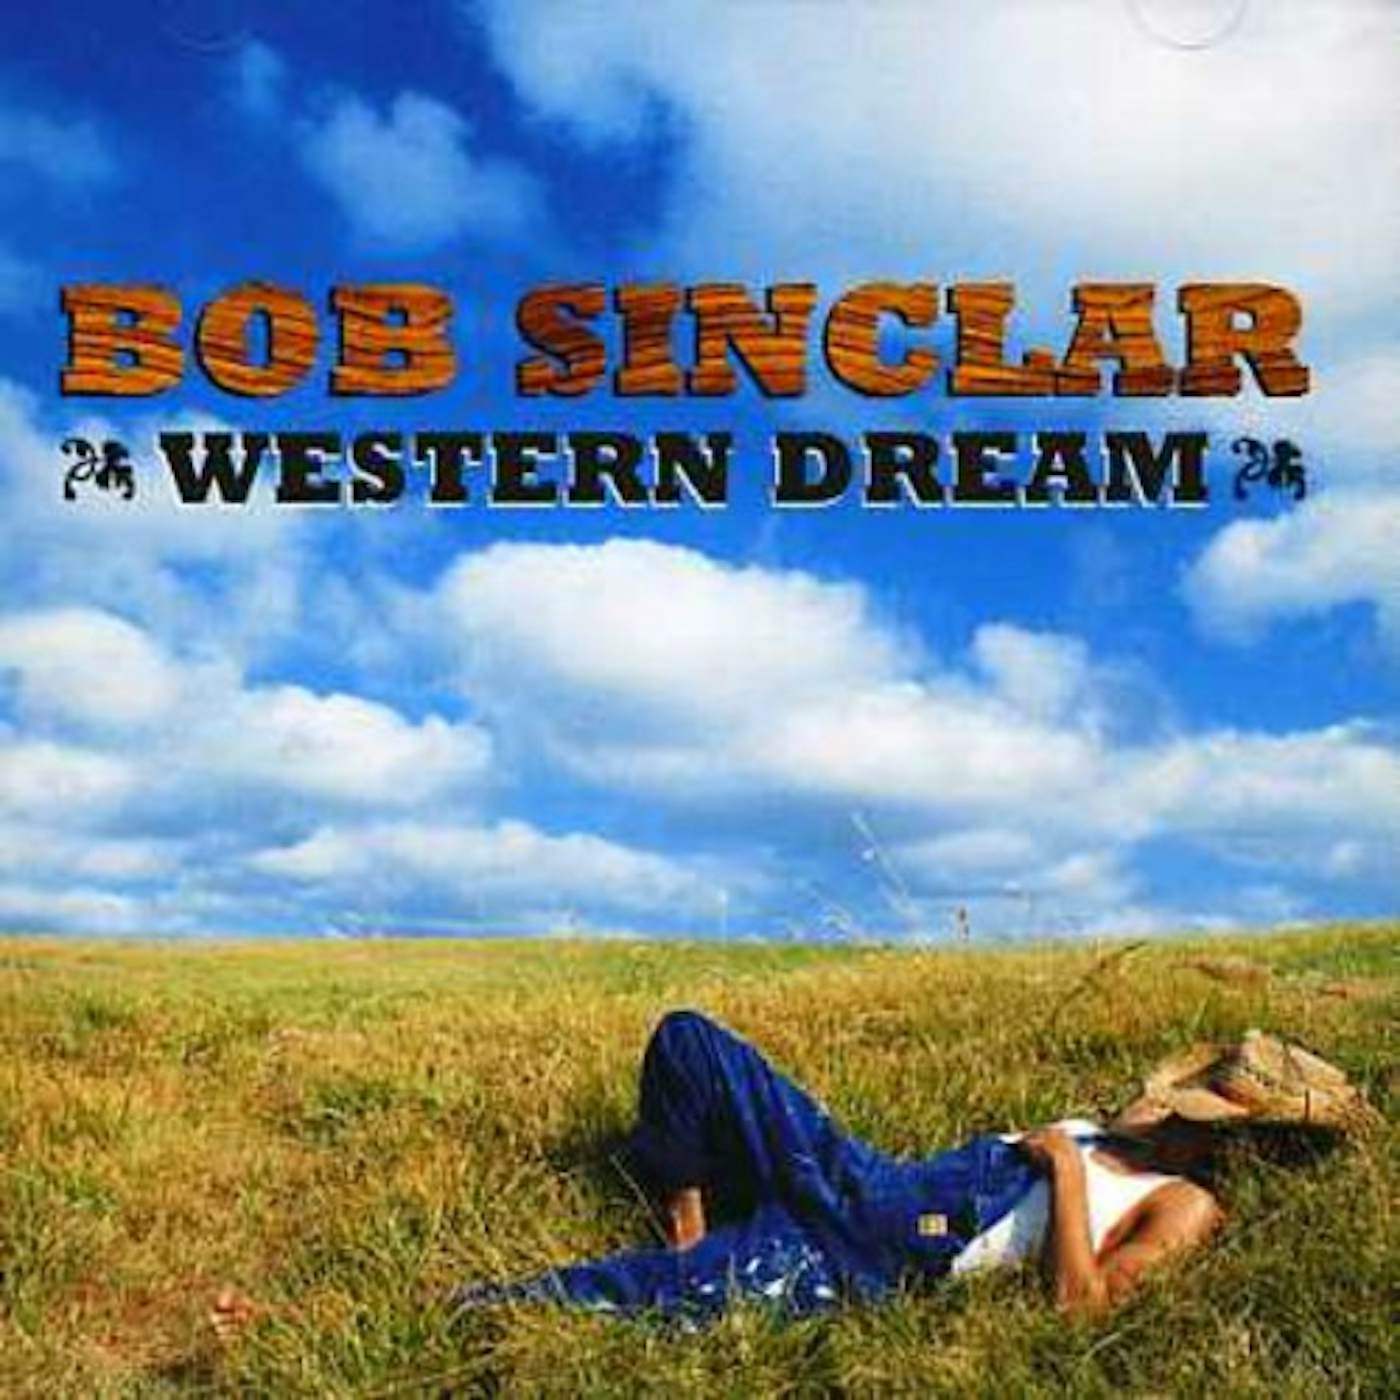 Bob Sinclar WESTERN DREAM CD